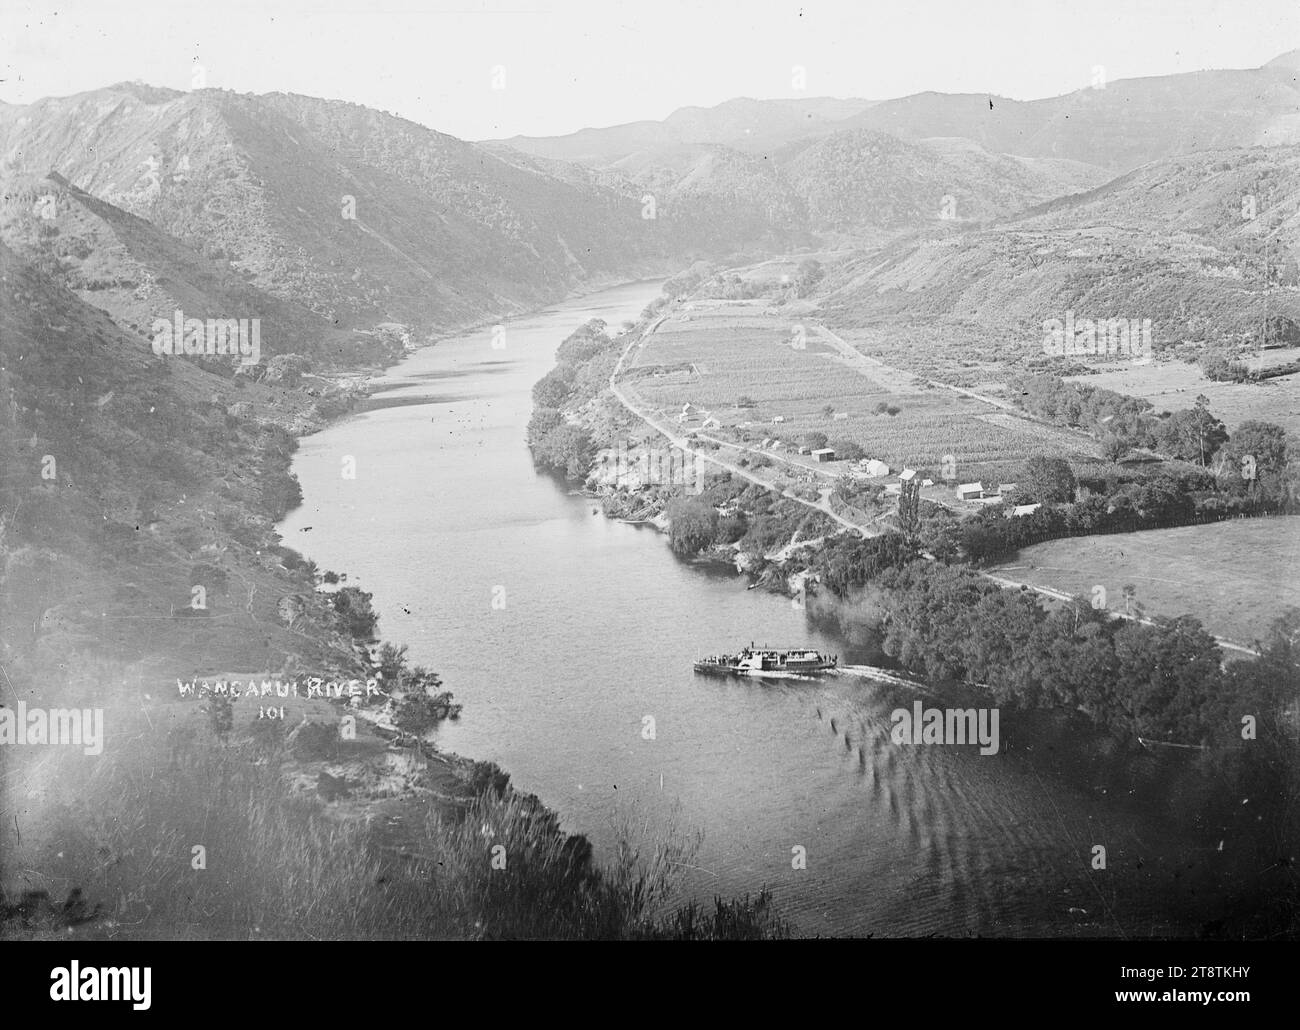 Blick hinunter auf den Whanganui River und die Stadt Kaiwhaiki, Blick hinunter auf den Whanganui River und die Stadt Kaiwhaiki, ca. 1910. Zeigt eine Paddeldampfer-Fähre mit Passagieren Stockfoto